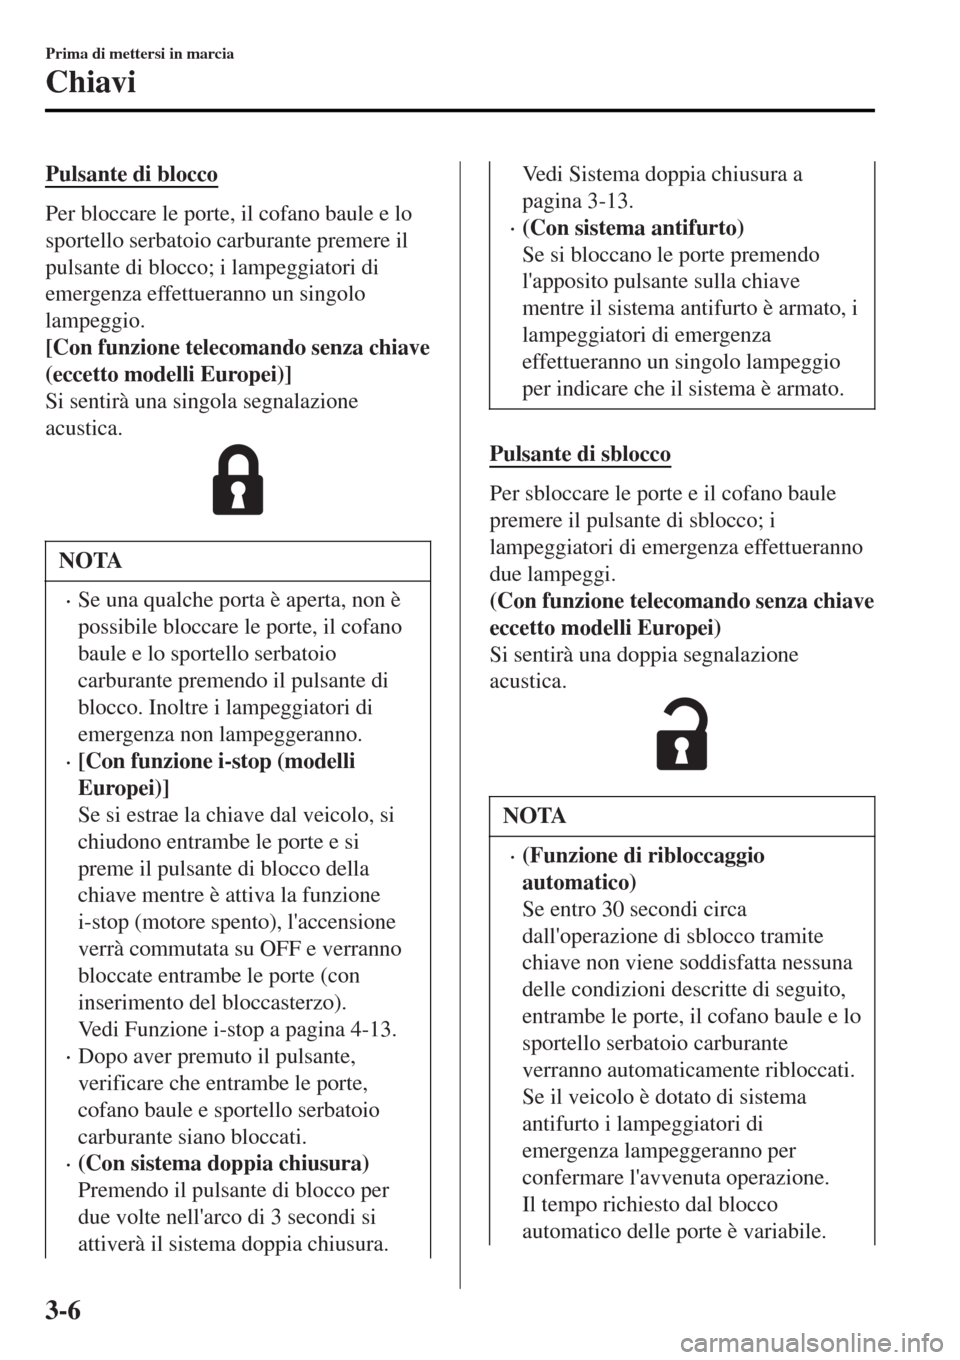 MAZDA MODEL MX-5 2015  Manuale del proprietario (in Italian) Pulsante di blocco
Per bloccare le porte, il cofano baule e lo
sportello serbatoio carburante premere il
pulsante di blocco; i lampeggiatori di
emergenza effettueranno un singolo
lampeggio.
[Con funzi